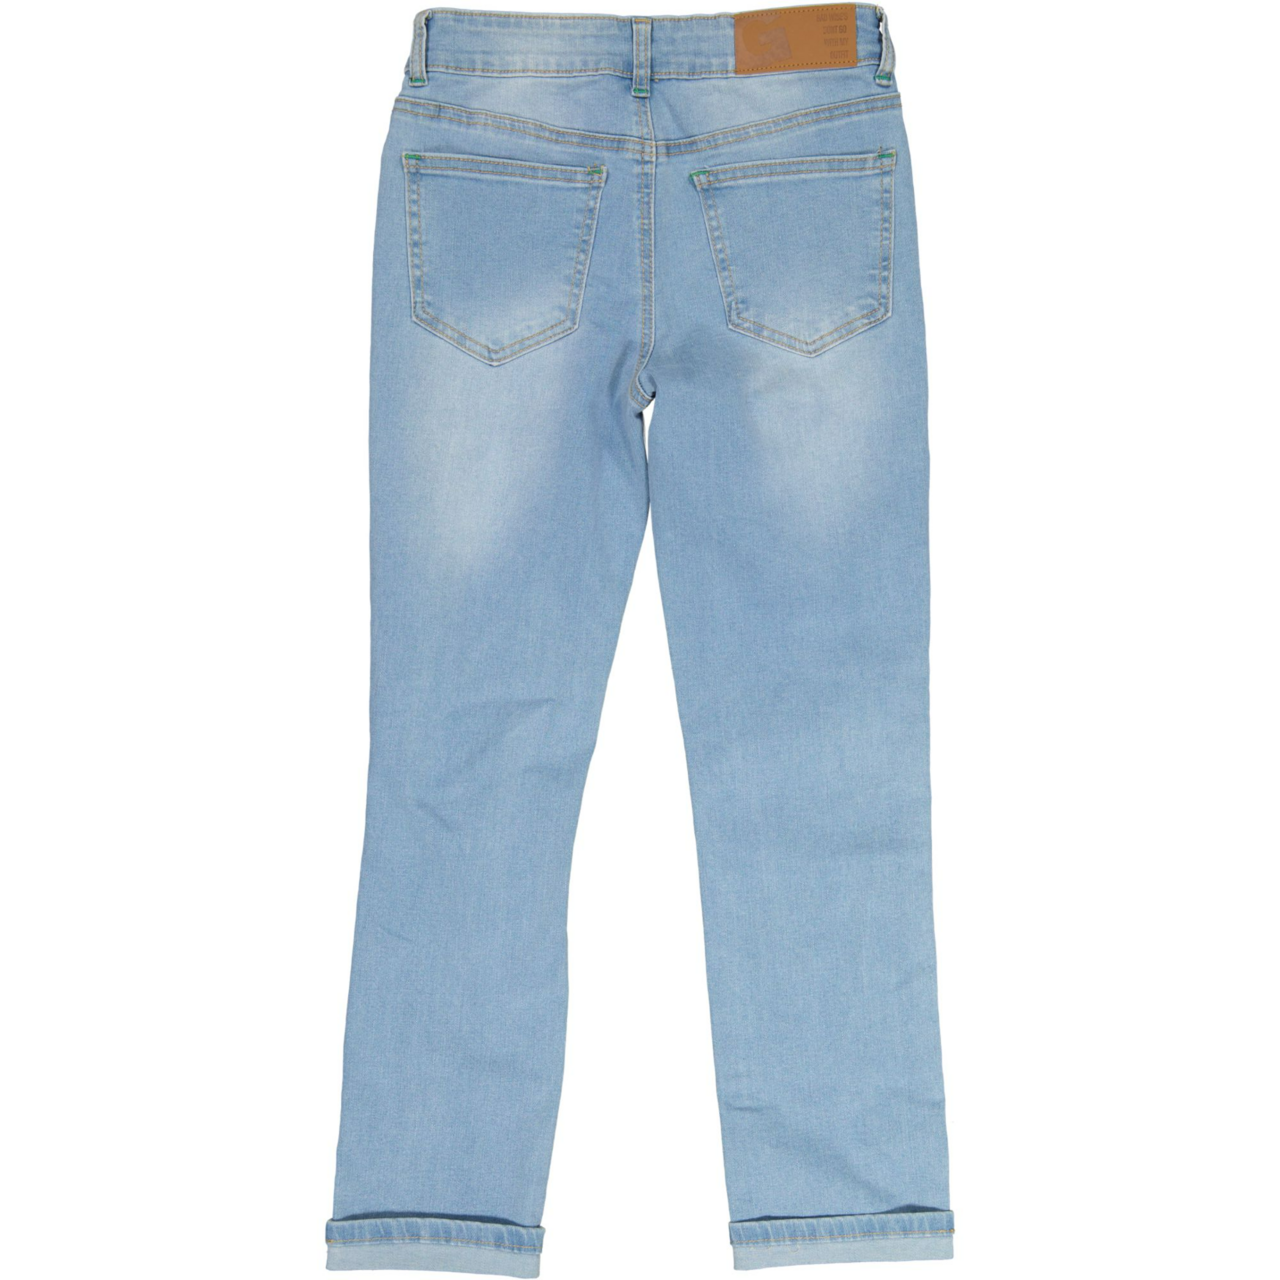 Unisex loose fit jeans Denim blue wash 146/152